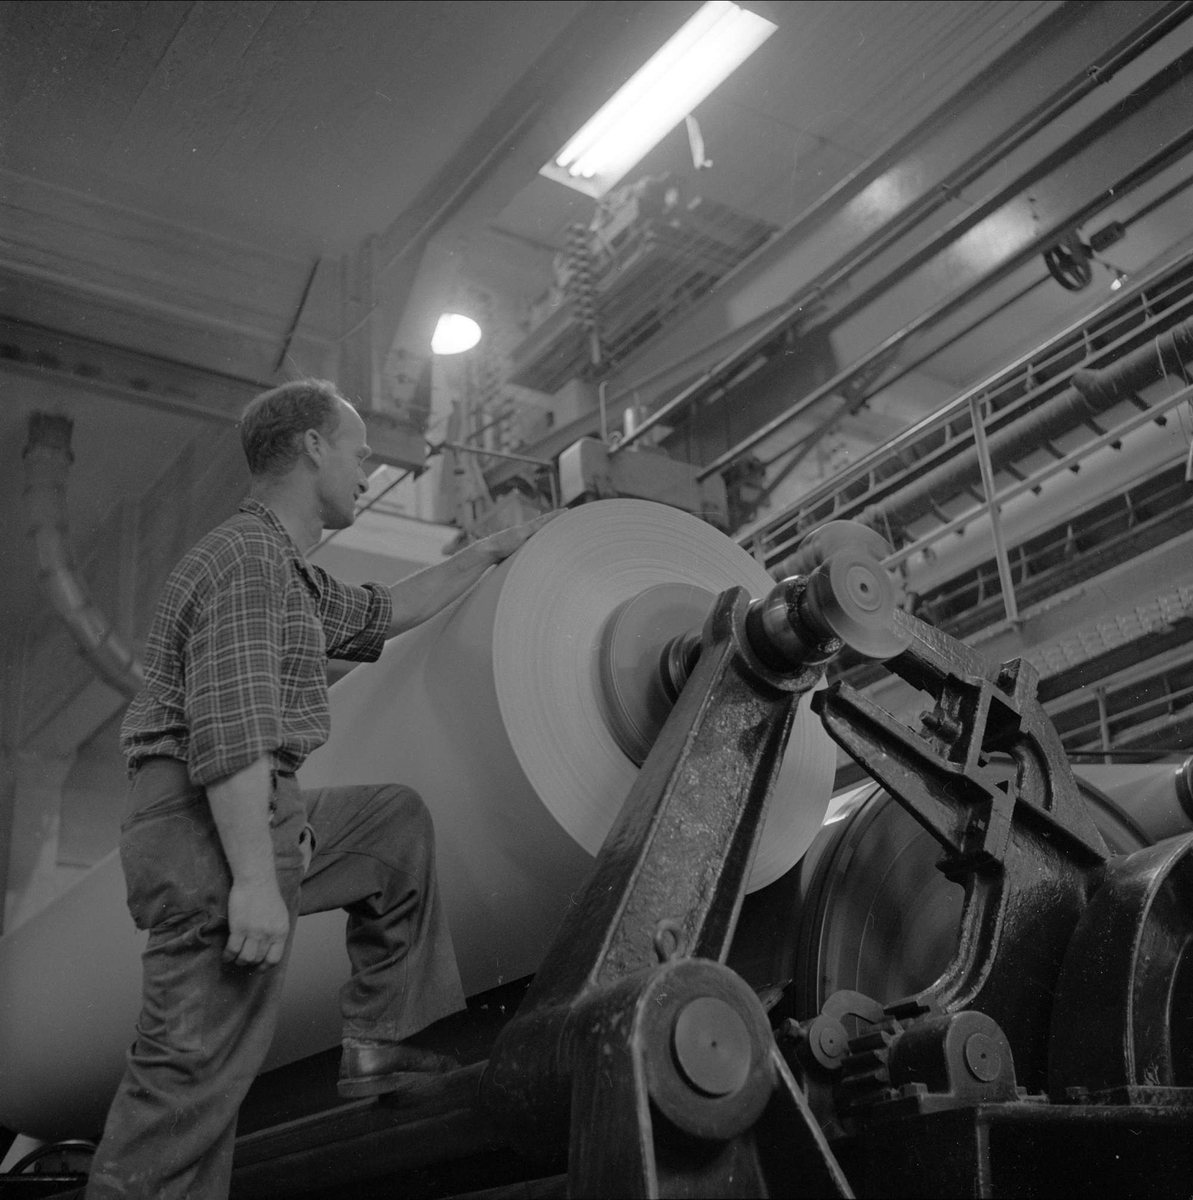 Holmen Brug i Hokksund, Øvre Eiker, Buskerud, 02.10.1958. Industriarbeider ved papirrull, produksjon av papir.